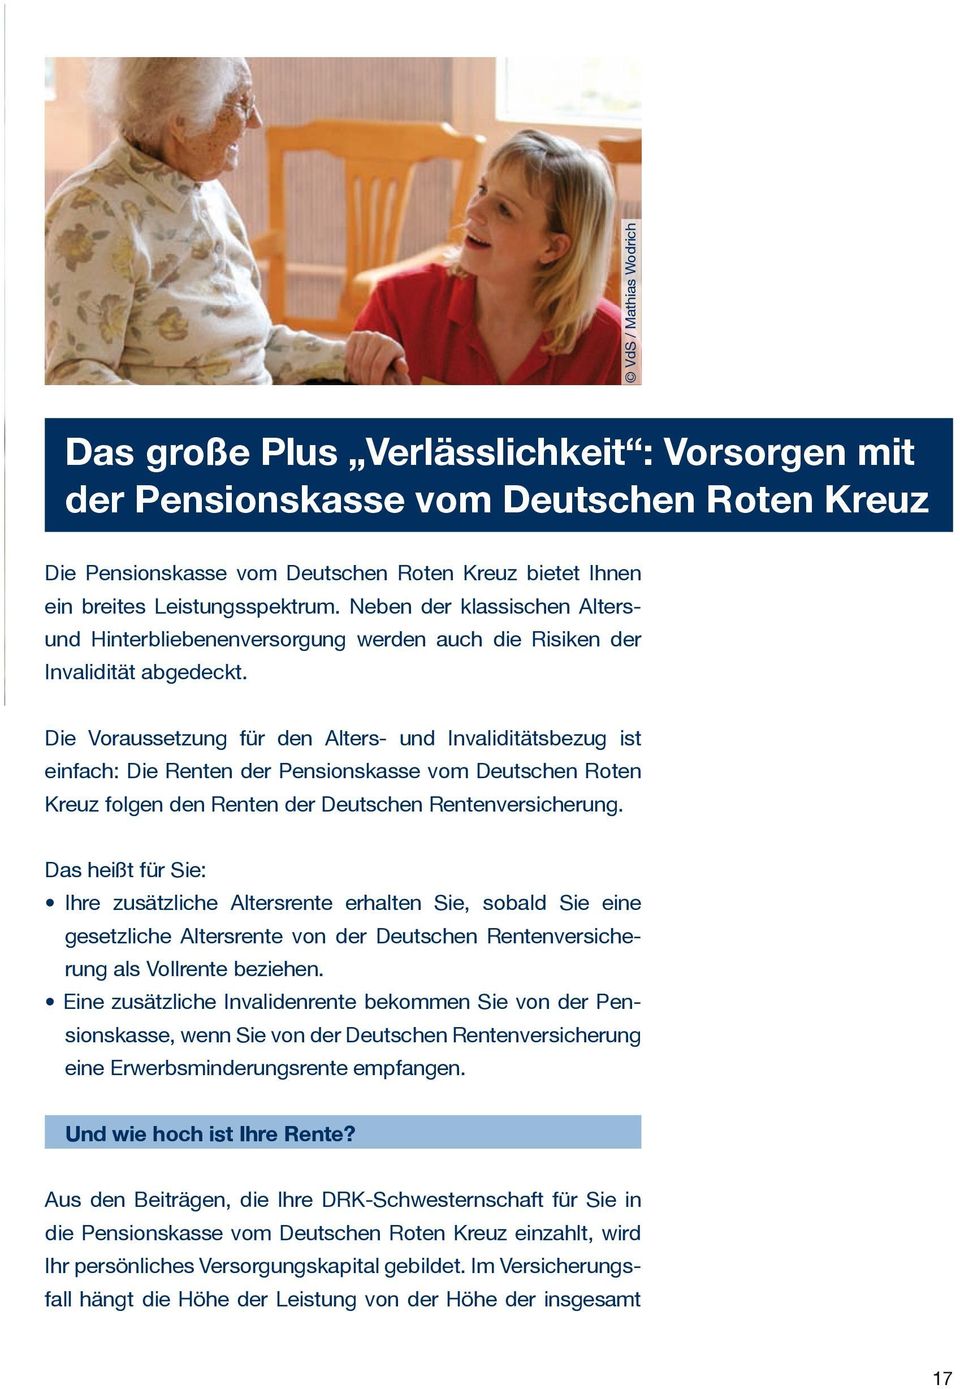 Die Voraussetzung für den Alters- und Invaliditätsbezug ist einfach: Die Renten der Pensionskasse vom Deutschen Roten Kreuz folgen den Renten der Deutschen Rentenversicherung.